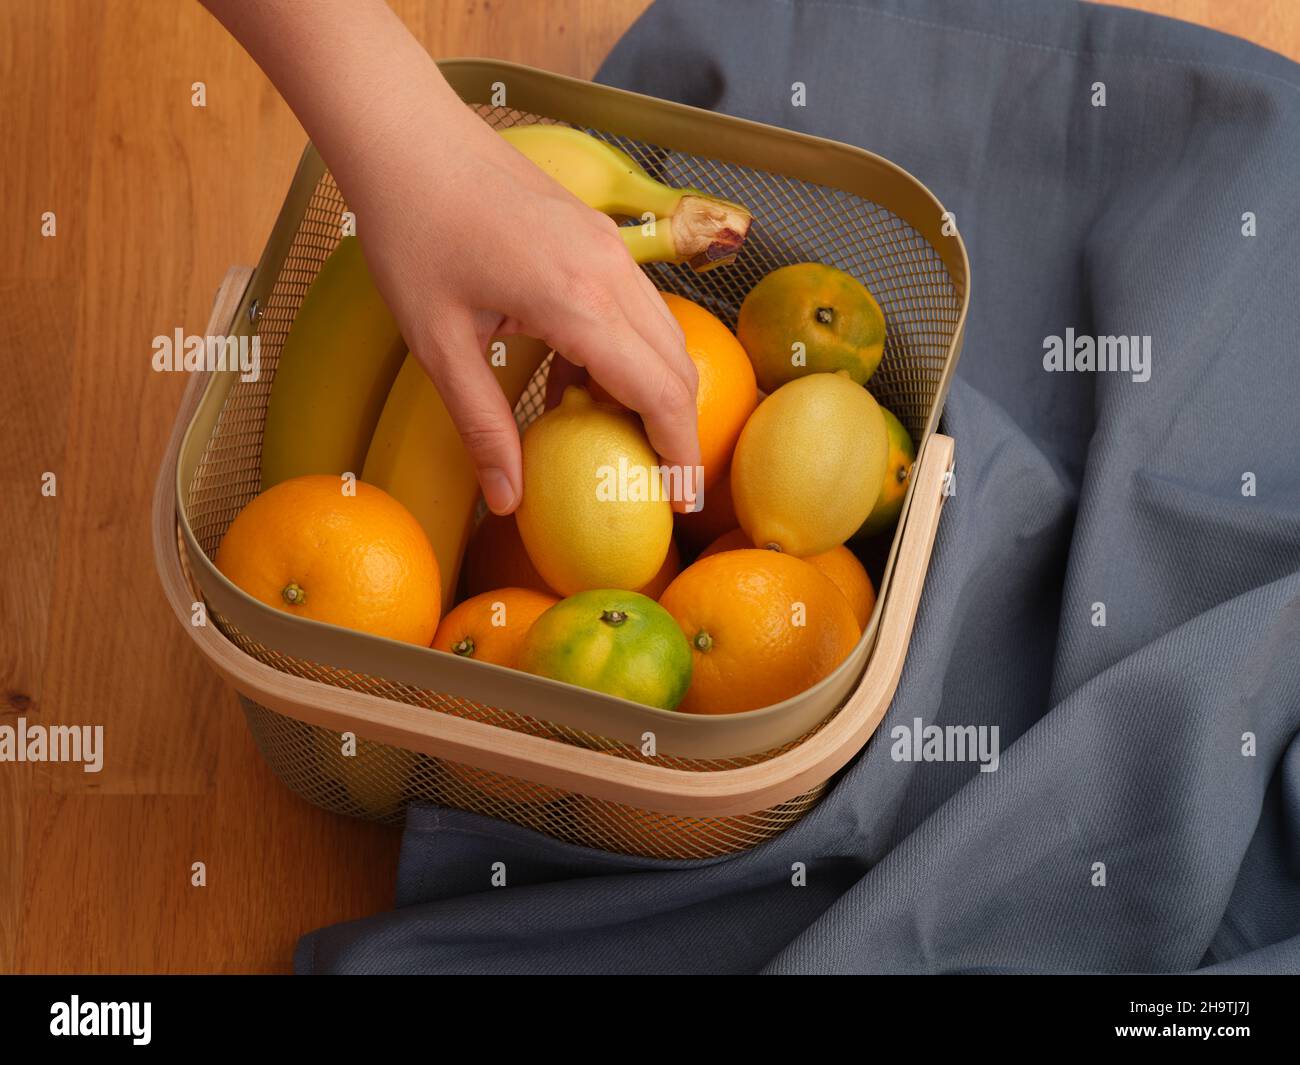 Une femme mettant sa main dans un panier de fruits et tirant un citron.Gros plan. Banque D'Images